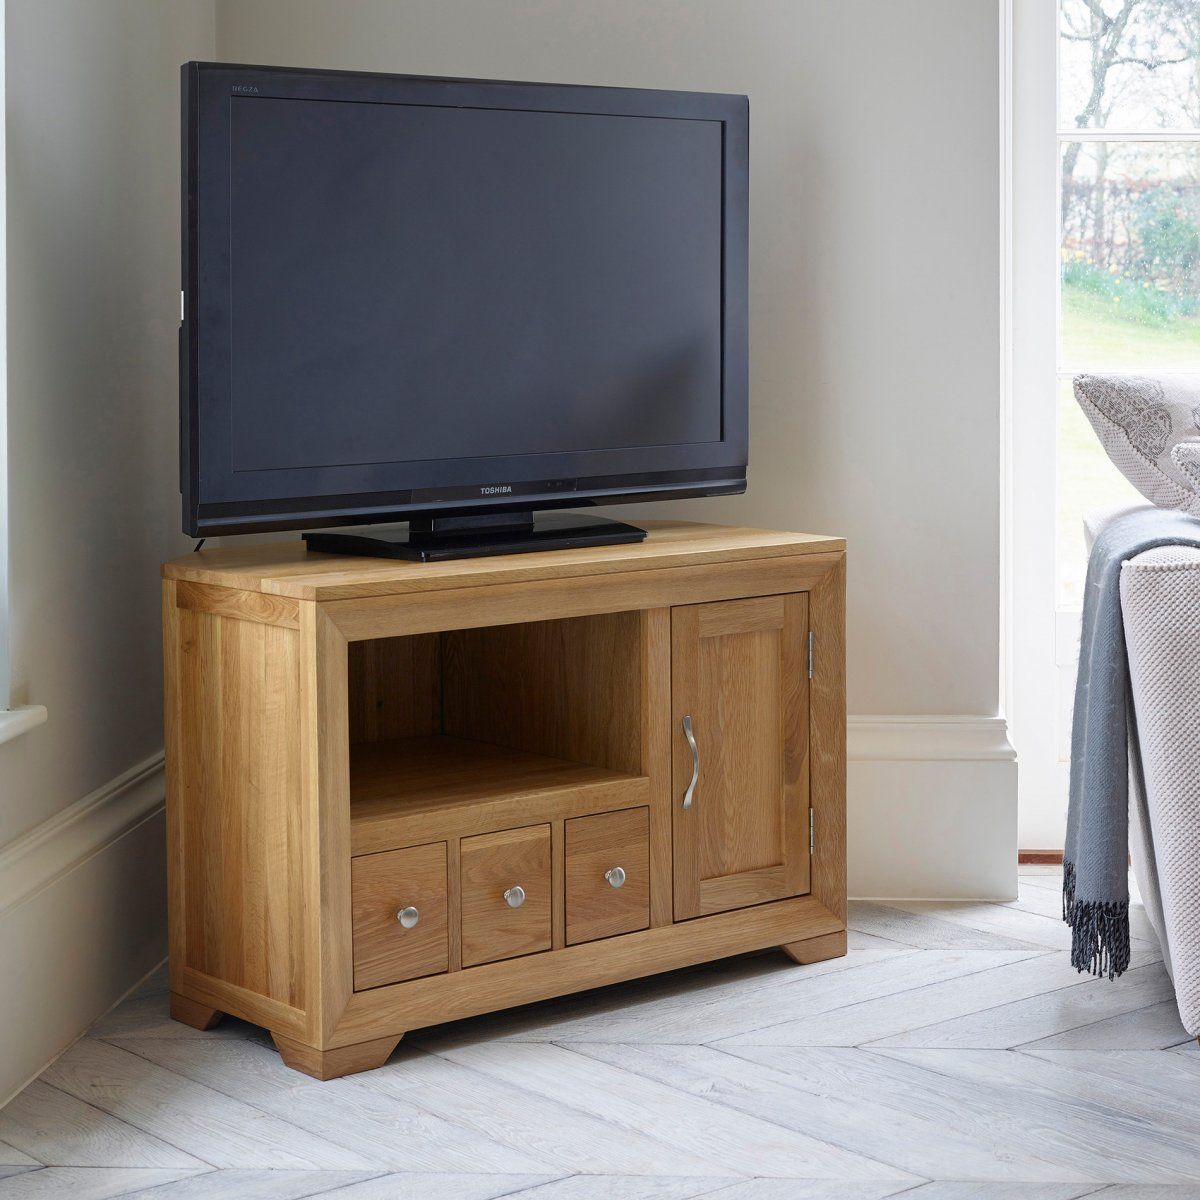 Bevel Small Corner Tv Cabinet In Solid Oak | Oak Furniture With Solid Oak Corner Tv Cabinets (View 6 of 15)